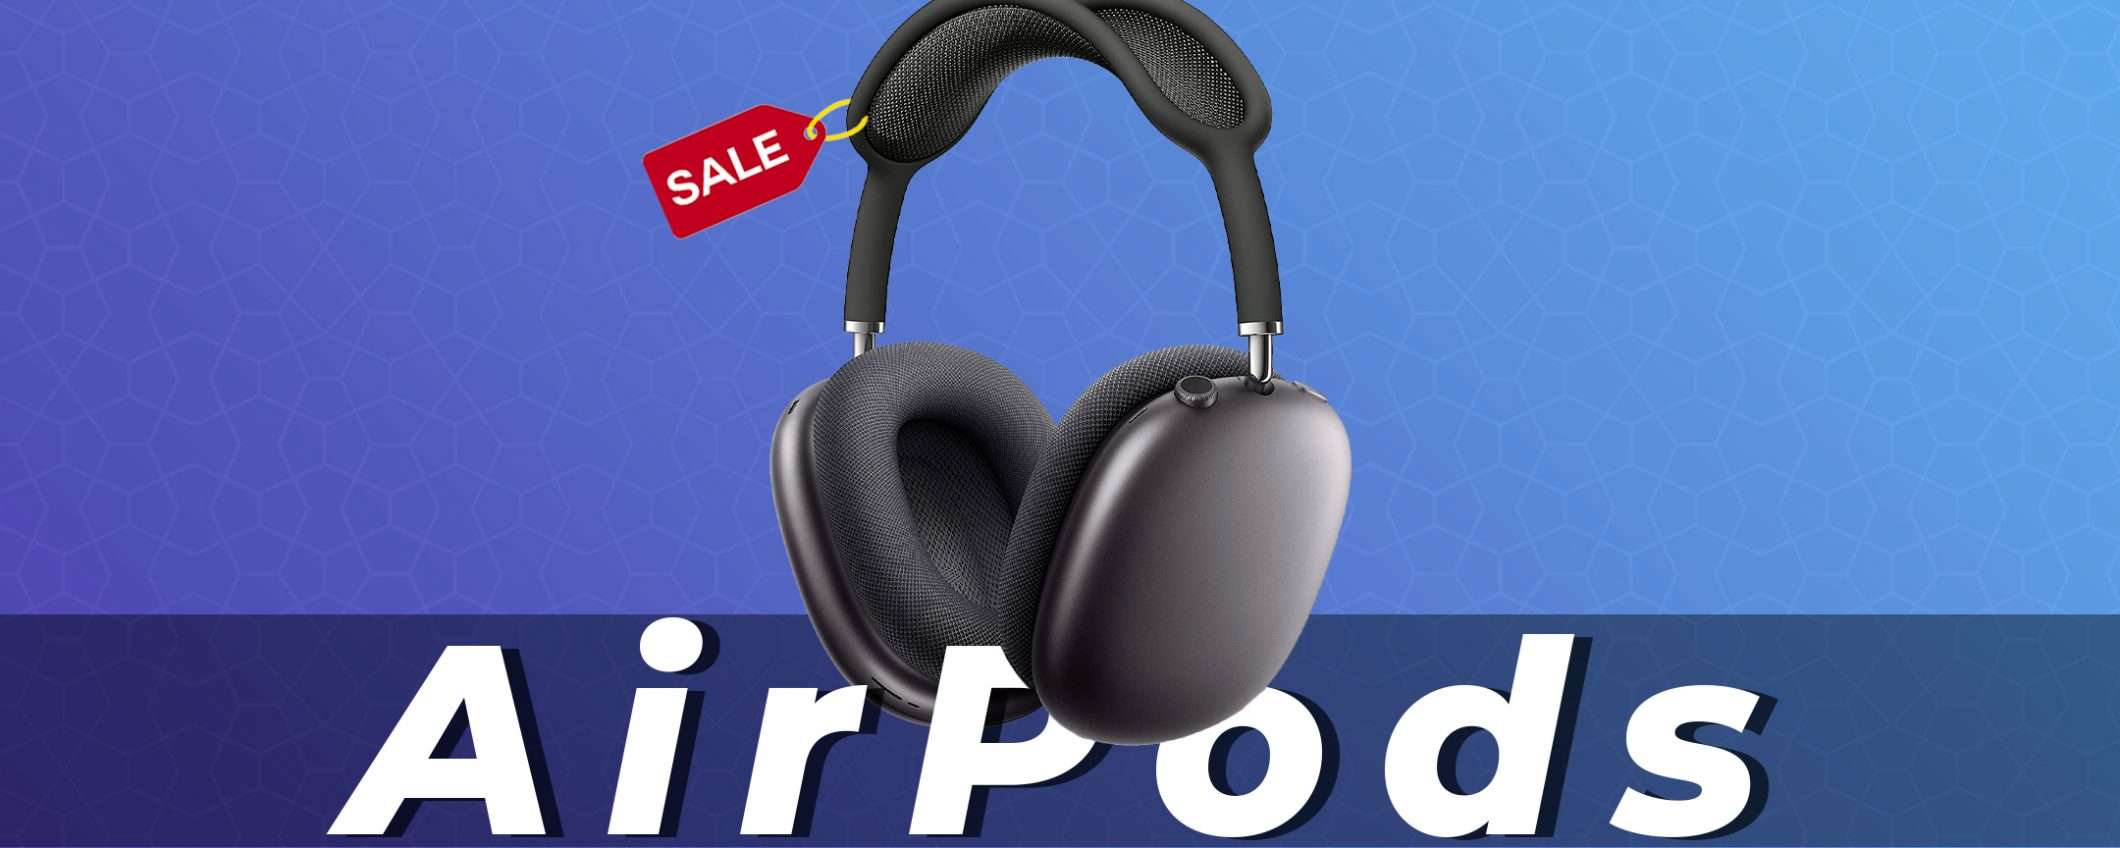 AirPods Max al prezzo più basso di sempre, 493€ | Offerte Amazon